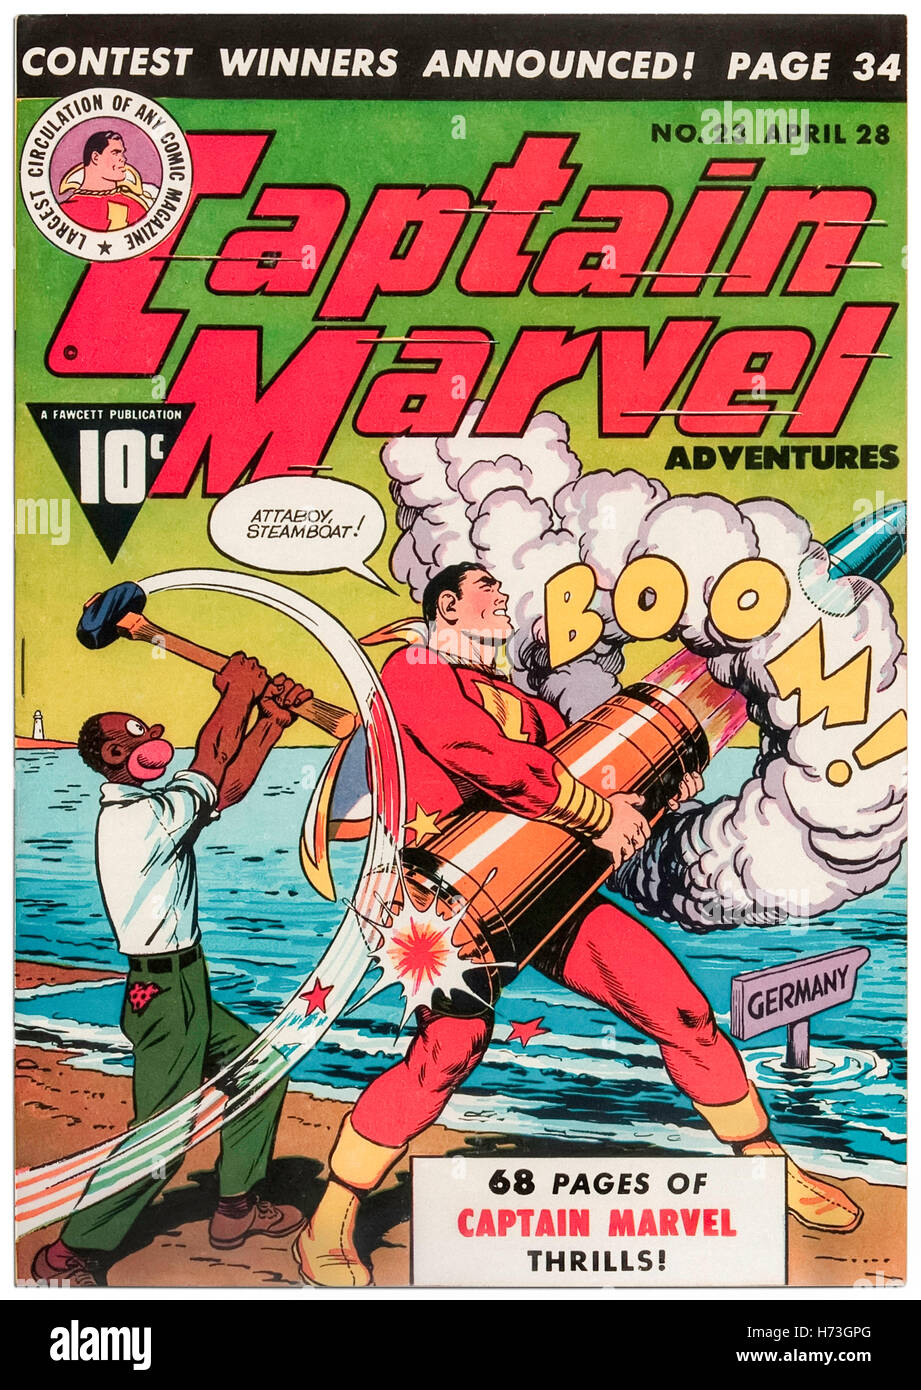 Captain Marvel Adventures questione 23 aprile 1943, dotato di una copertina da C. C. Beck (1910-1989) pubblicato da Fawcett Comics con 'Steamboat' uno stereotipo razziale di un afro-americano. Gli editori ha pubblicato degli orientamenti nel 1942 per eliminare offensivo o contenuto sovversivo; Steamboat era andato in pensione nel 1945. Foto Stock